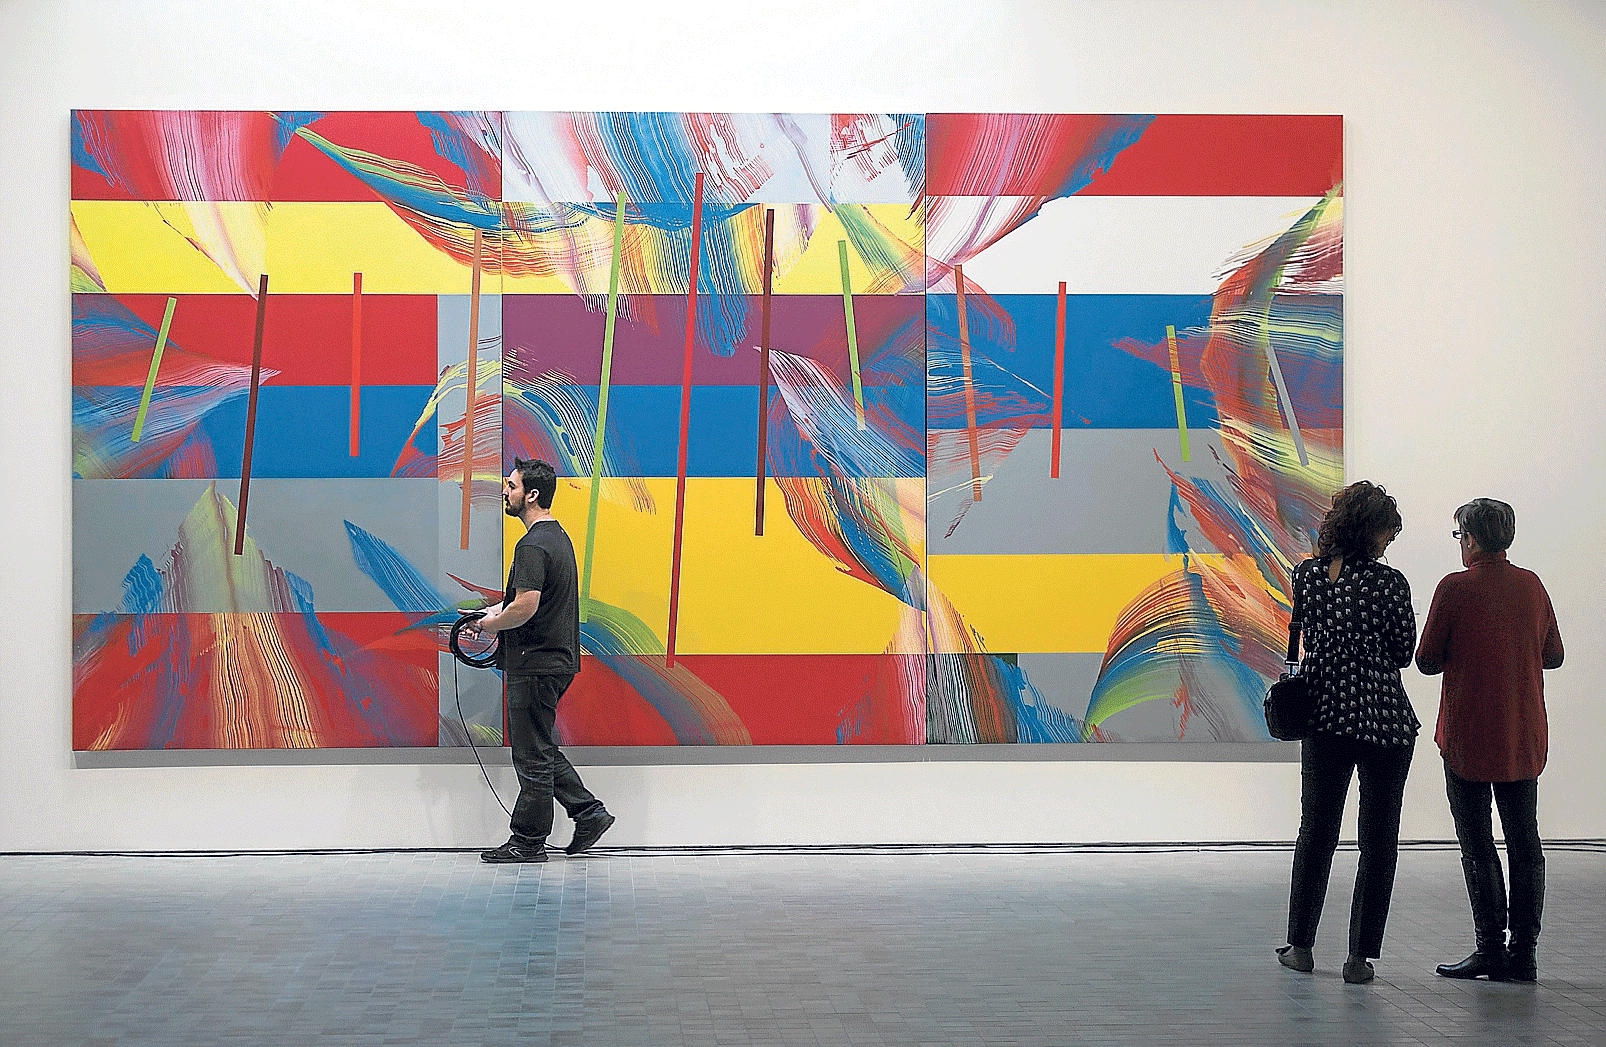 Tríptico 'L. I. F.' (libertad, igualdad y fraternidad) de 2009, de seis por tres metros, que es la obra de mayor tamaño de la exposición